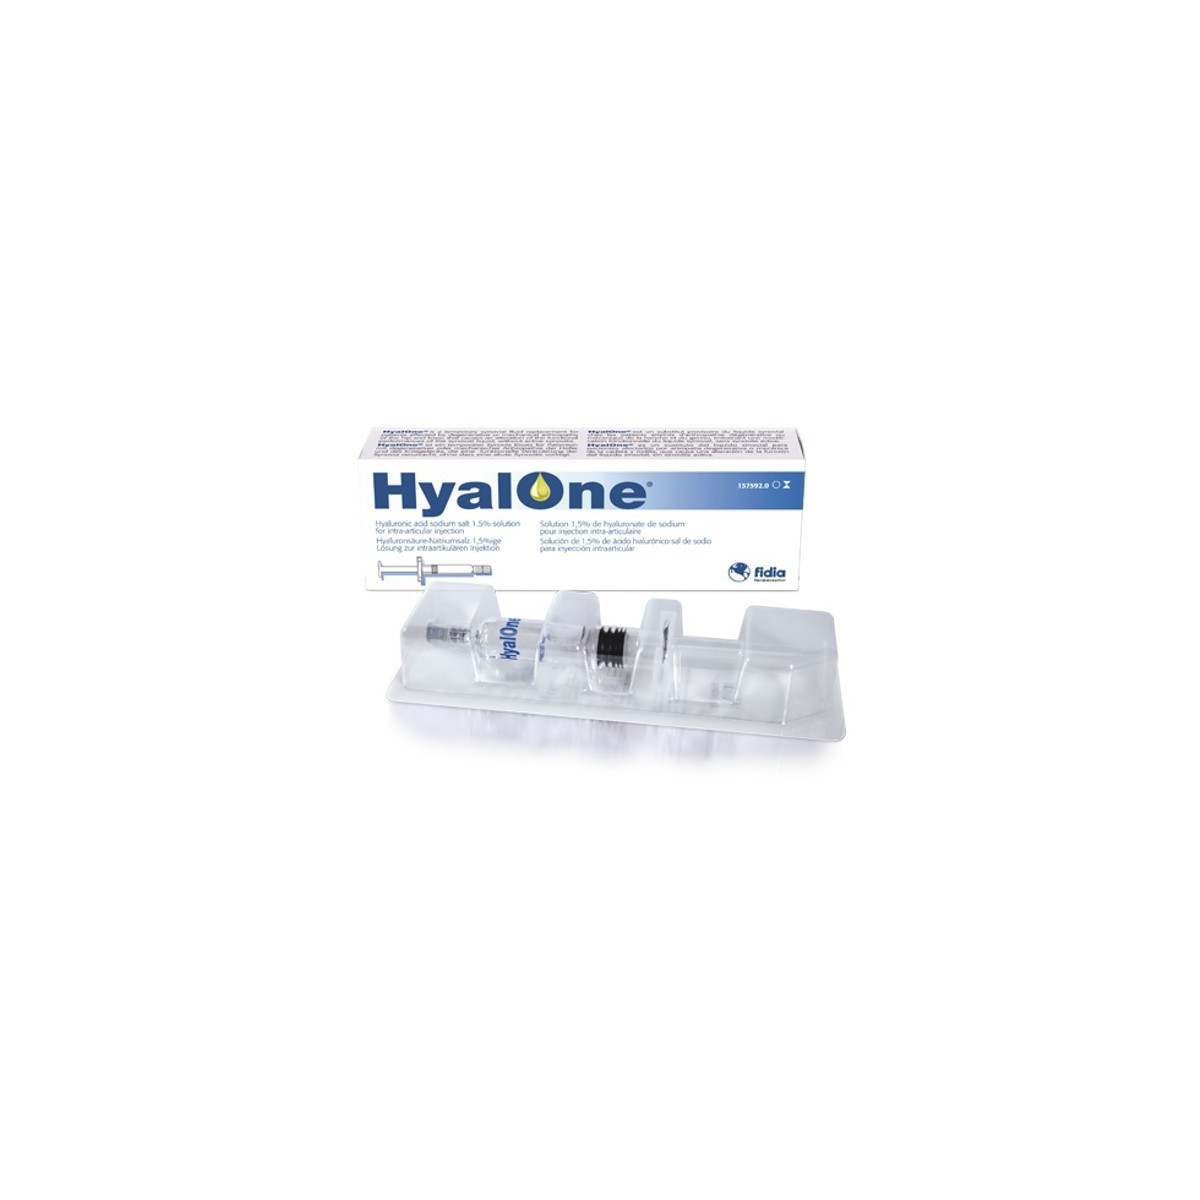 Hyalone 60 mg / 4 ml 1 jeringa precargada cadera y rodilla 1 unidad